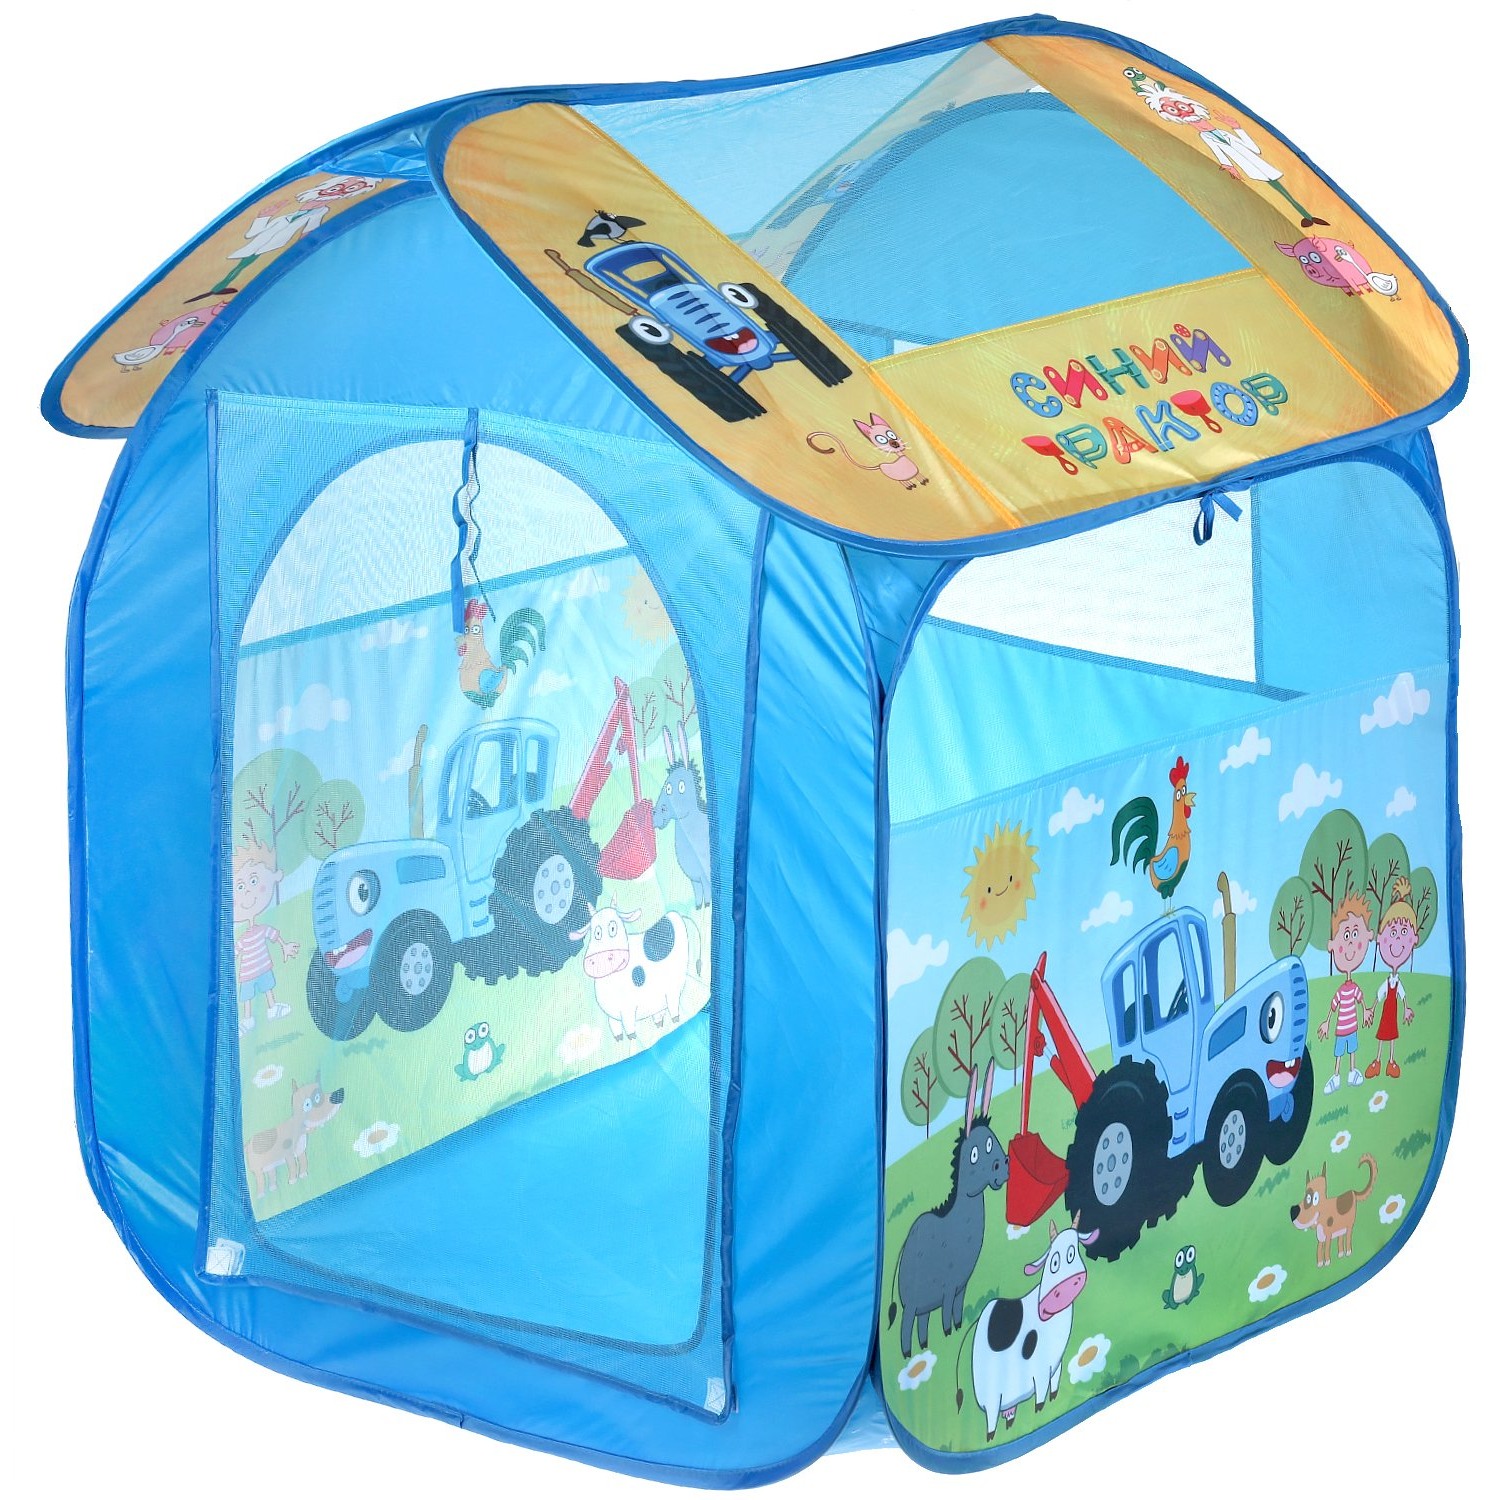 Игровая палатка "Играем вместе" Синий трактор (83х80х105 см, в сумке) GFАВТ2R